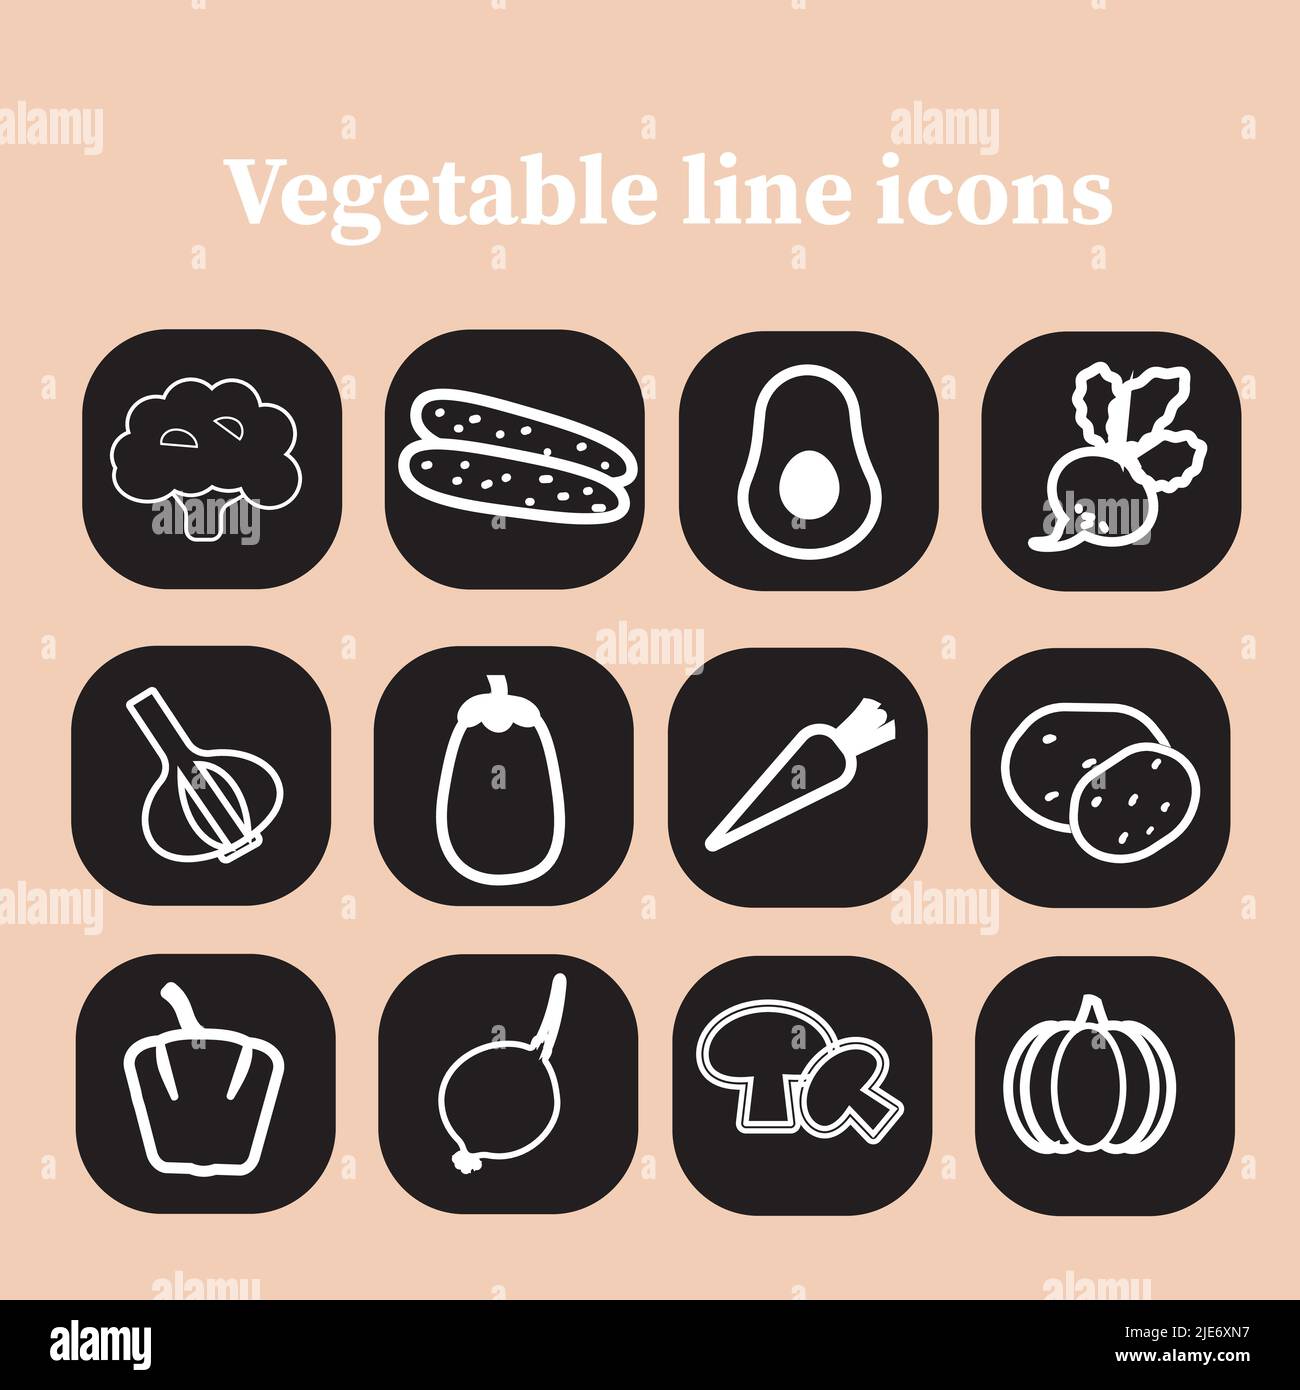 Symbole für Gemüselinie. Sammlung von Gemüse-Ikonen auf den schwarzen Aufklebern. Vektor-Illustration.gesundes Lebensmittelkonzept. Stock Vektor